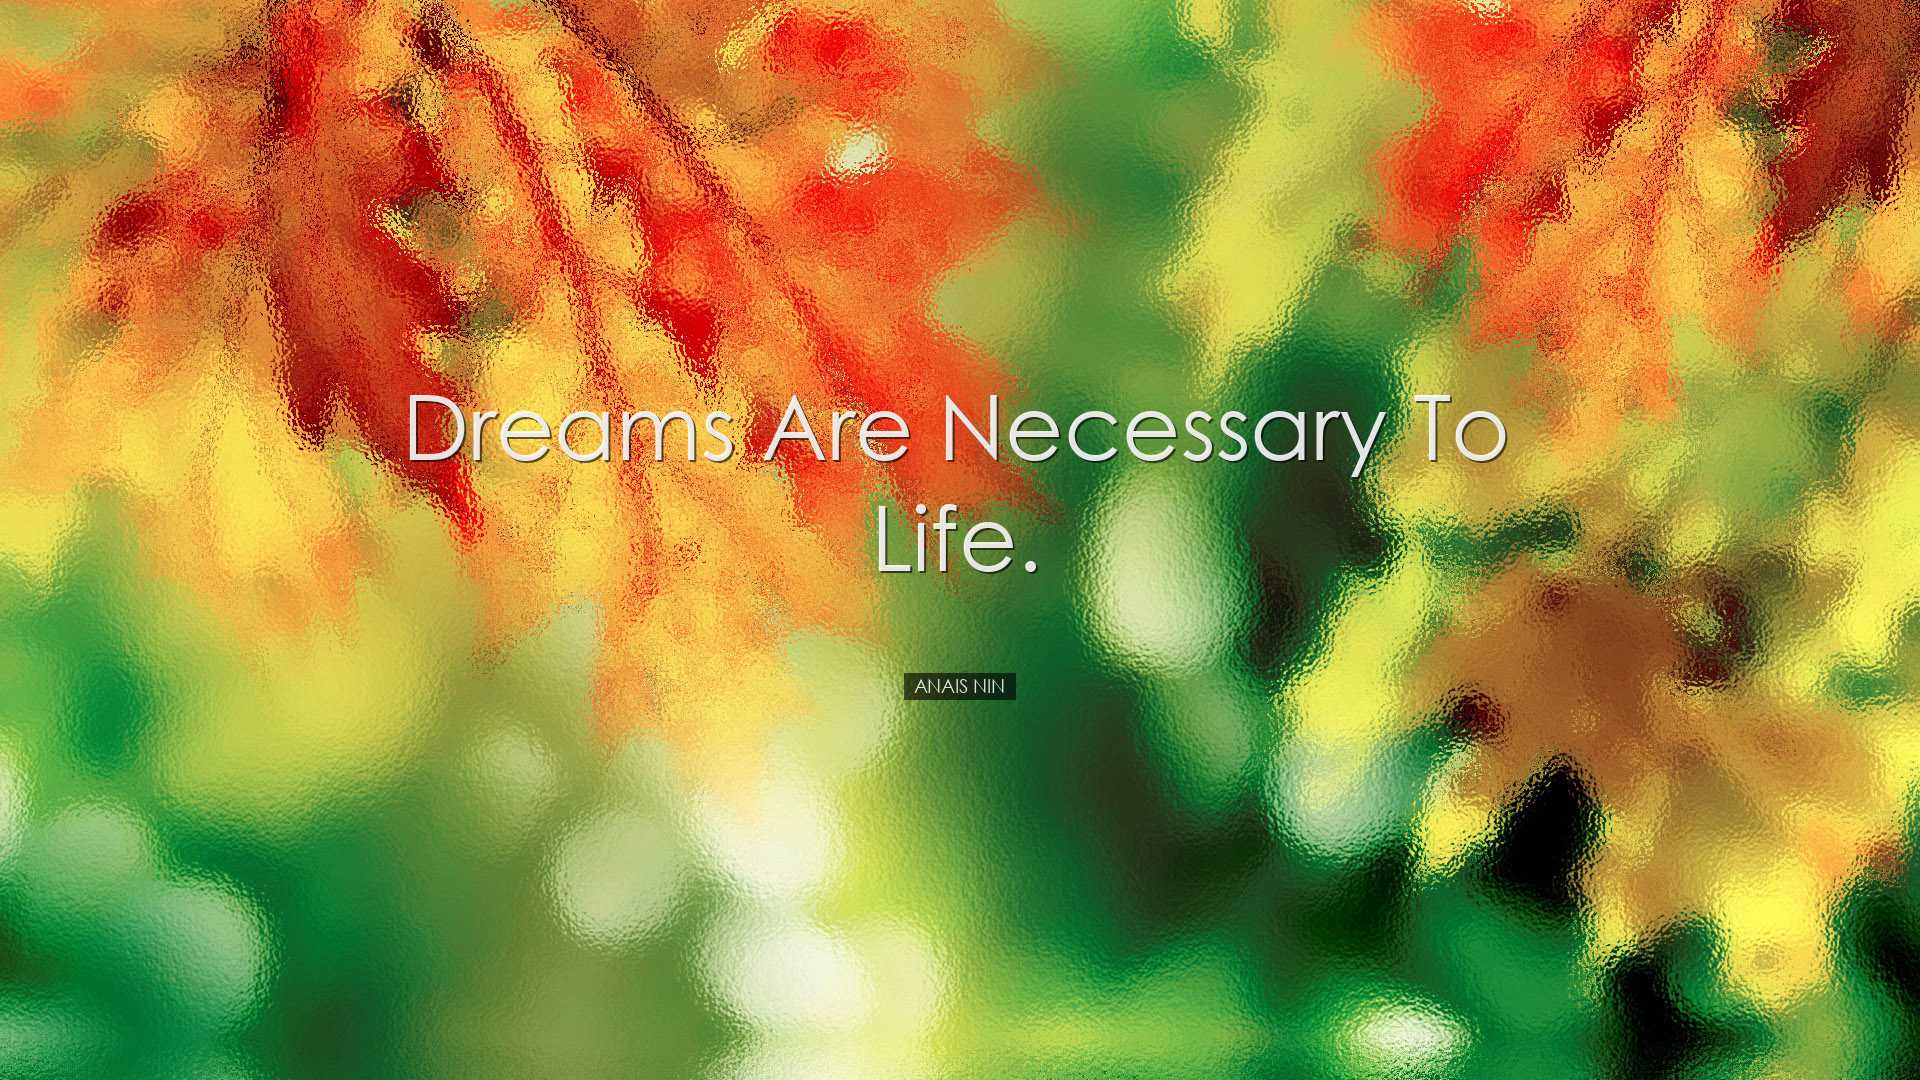 Dreams are necessary to life. - Anais Nin